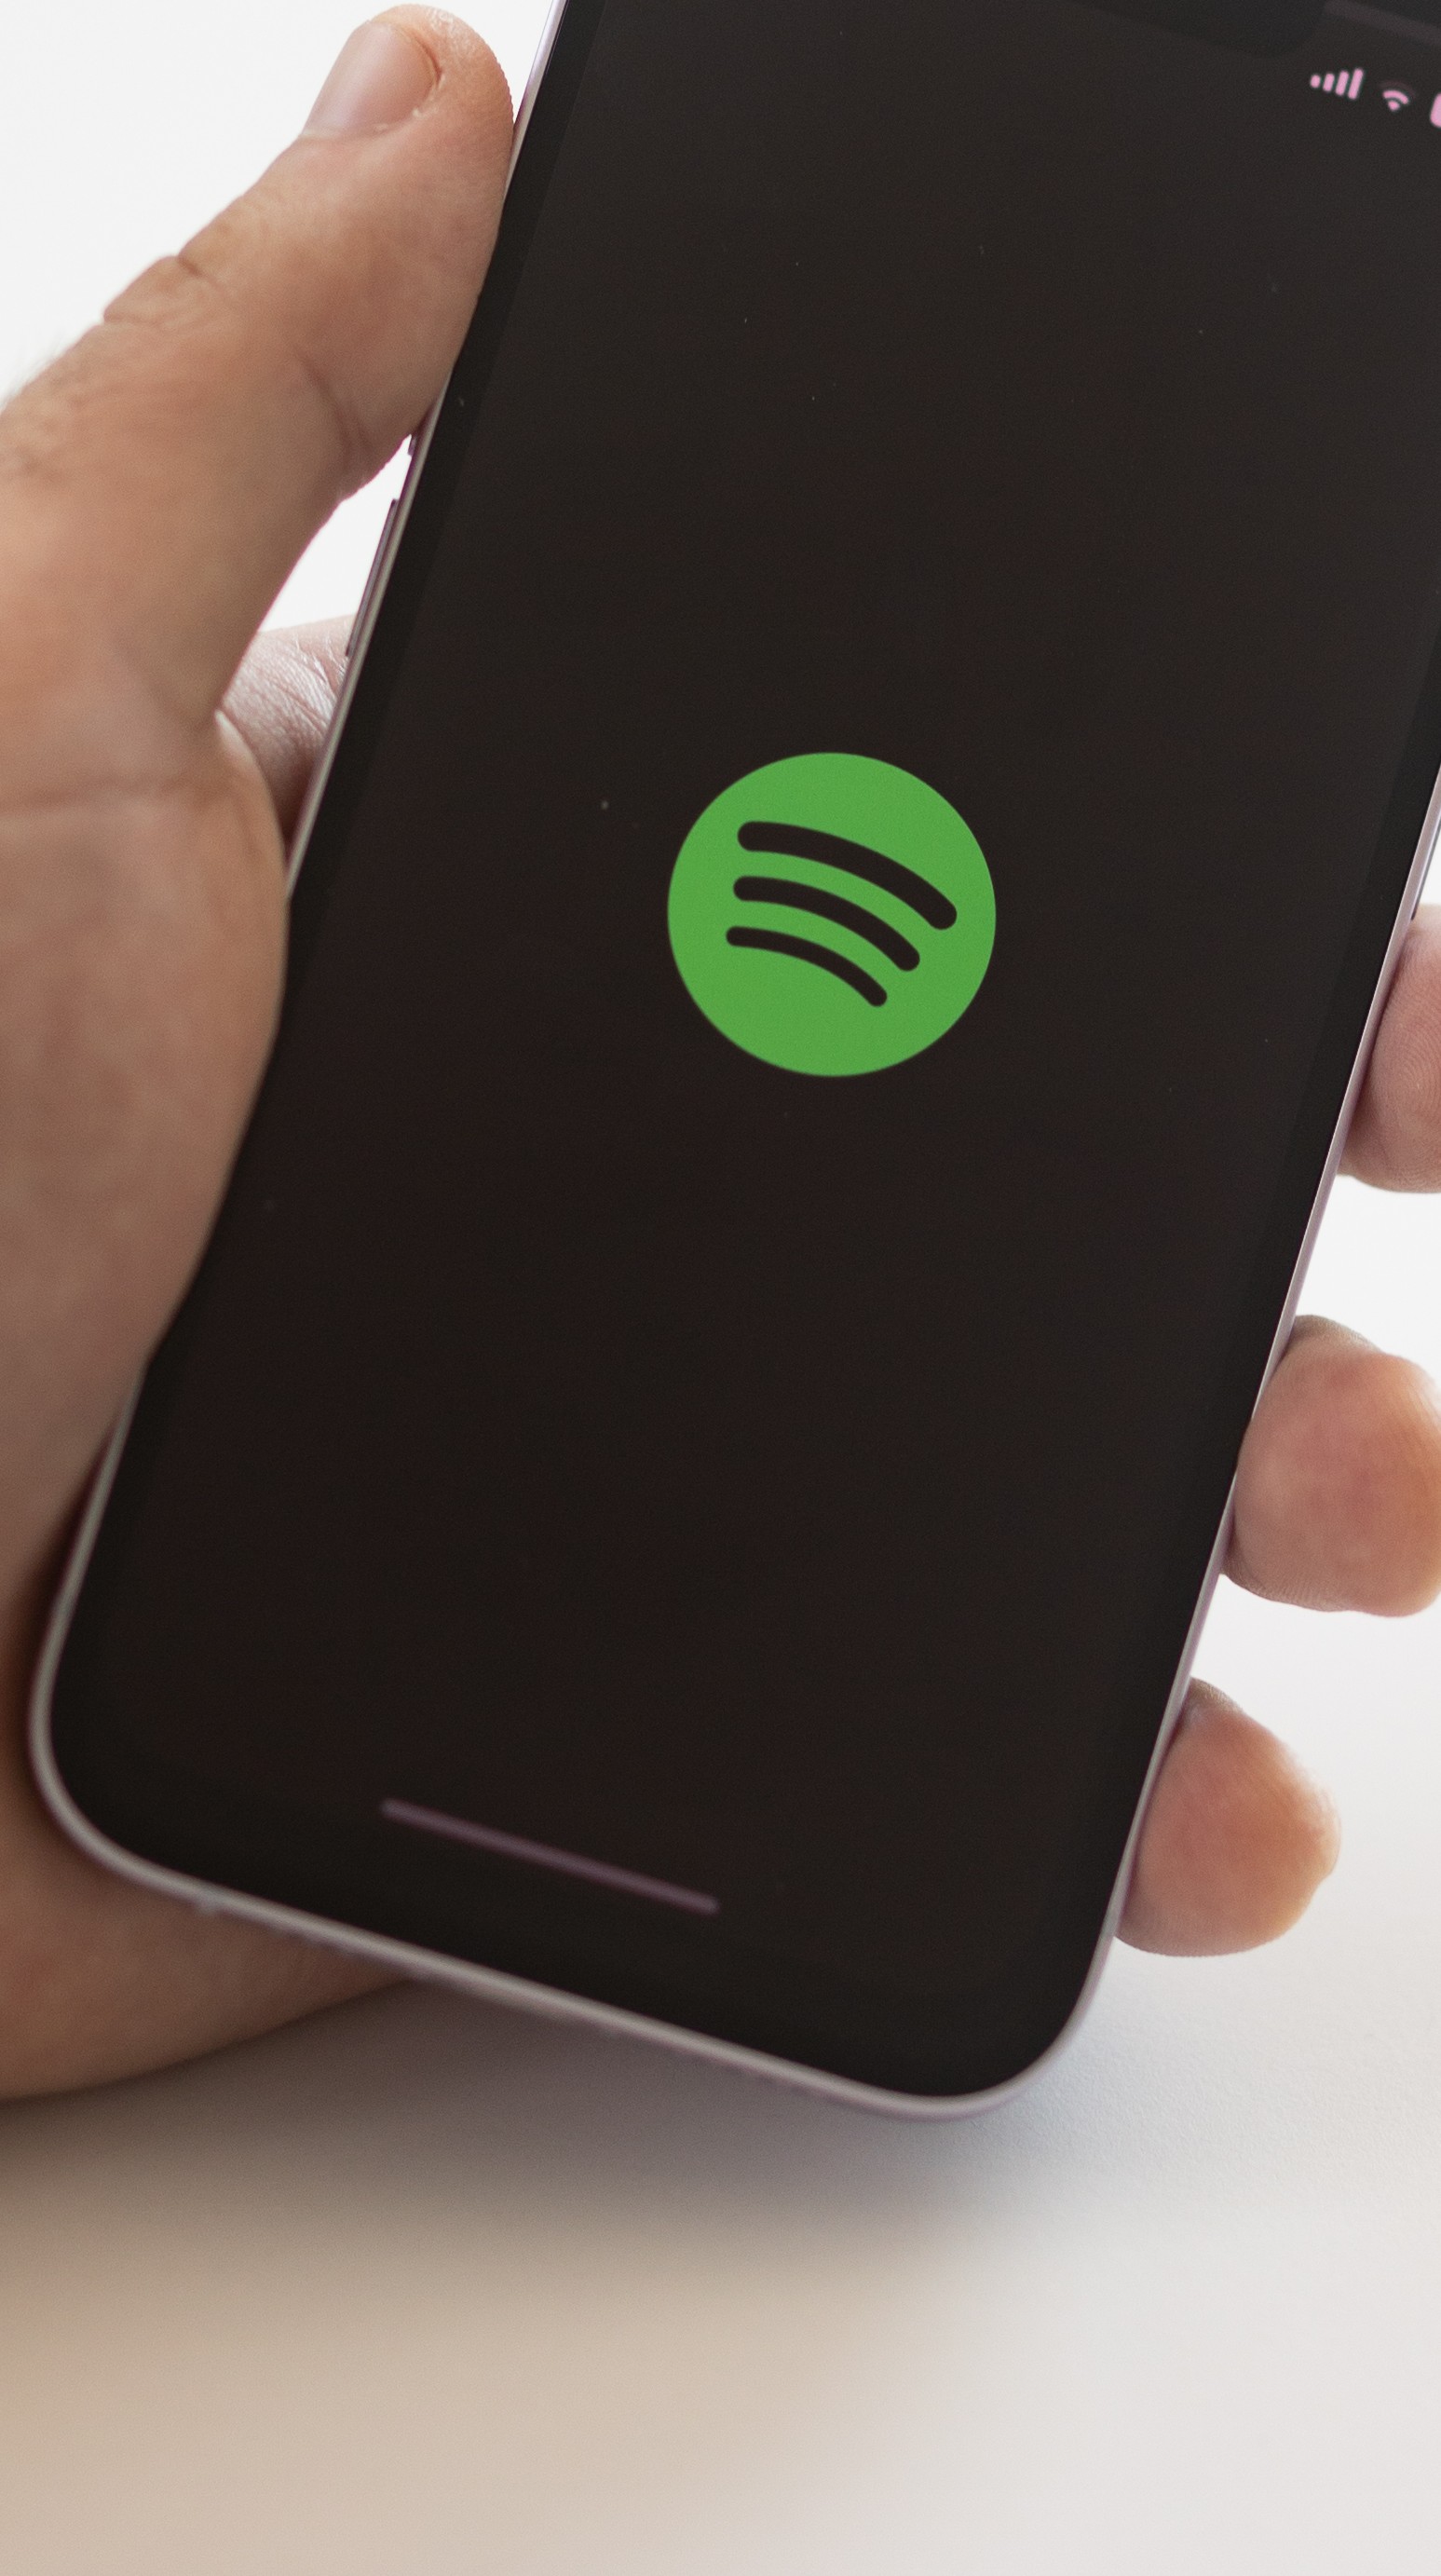 Usa Spotify? Retrospectiva 2023 é liberada; saiba como ver a sua